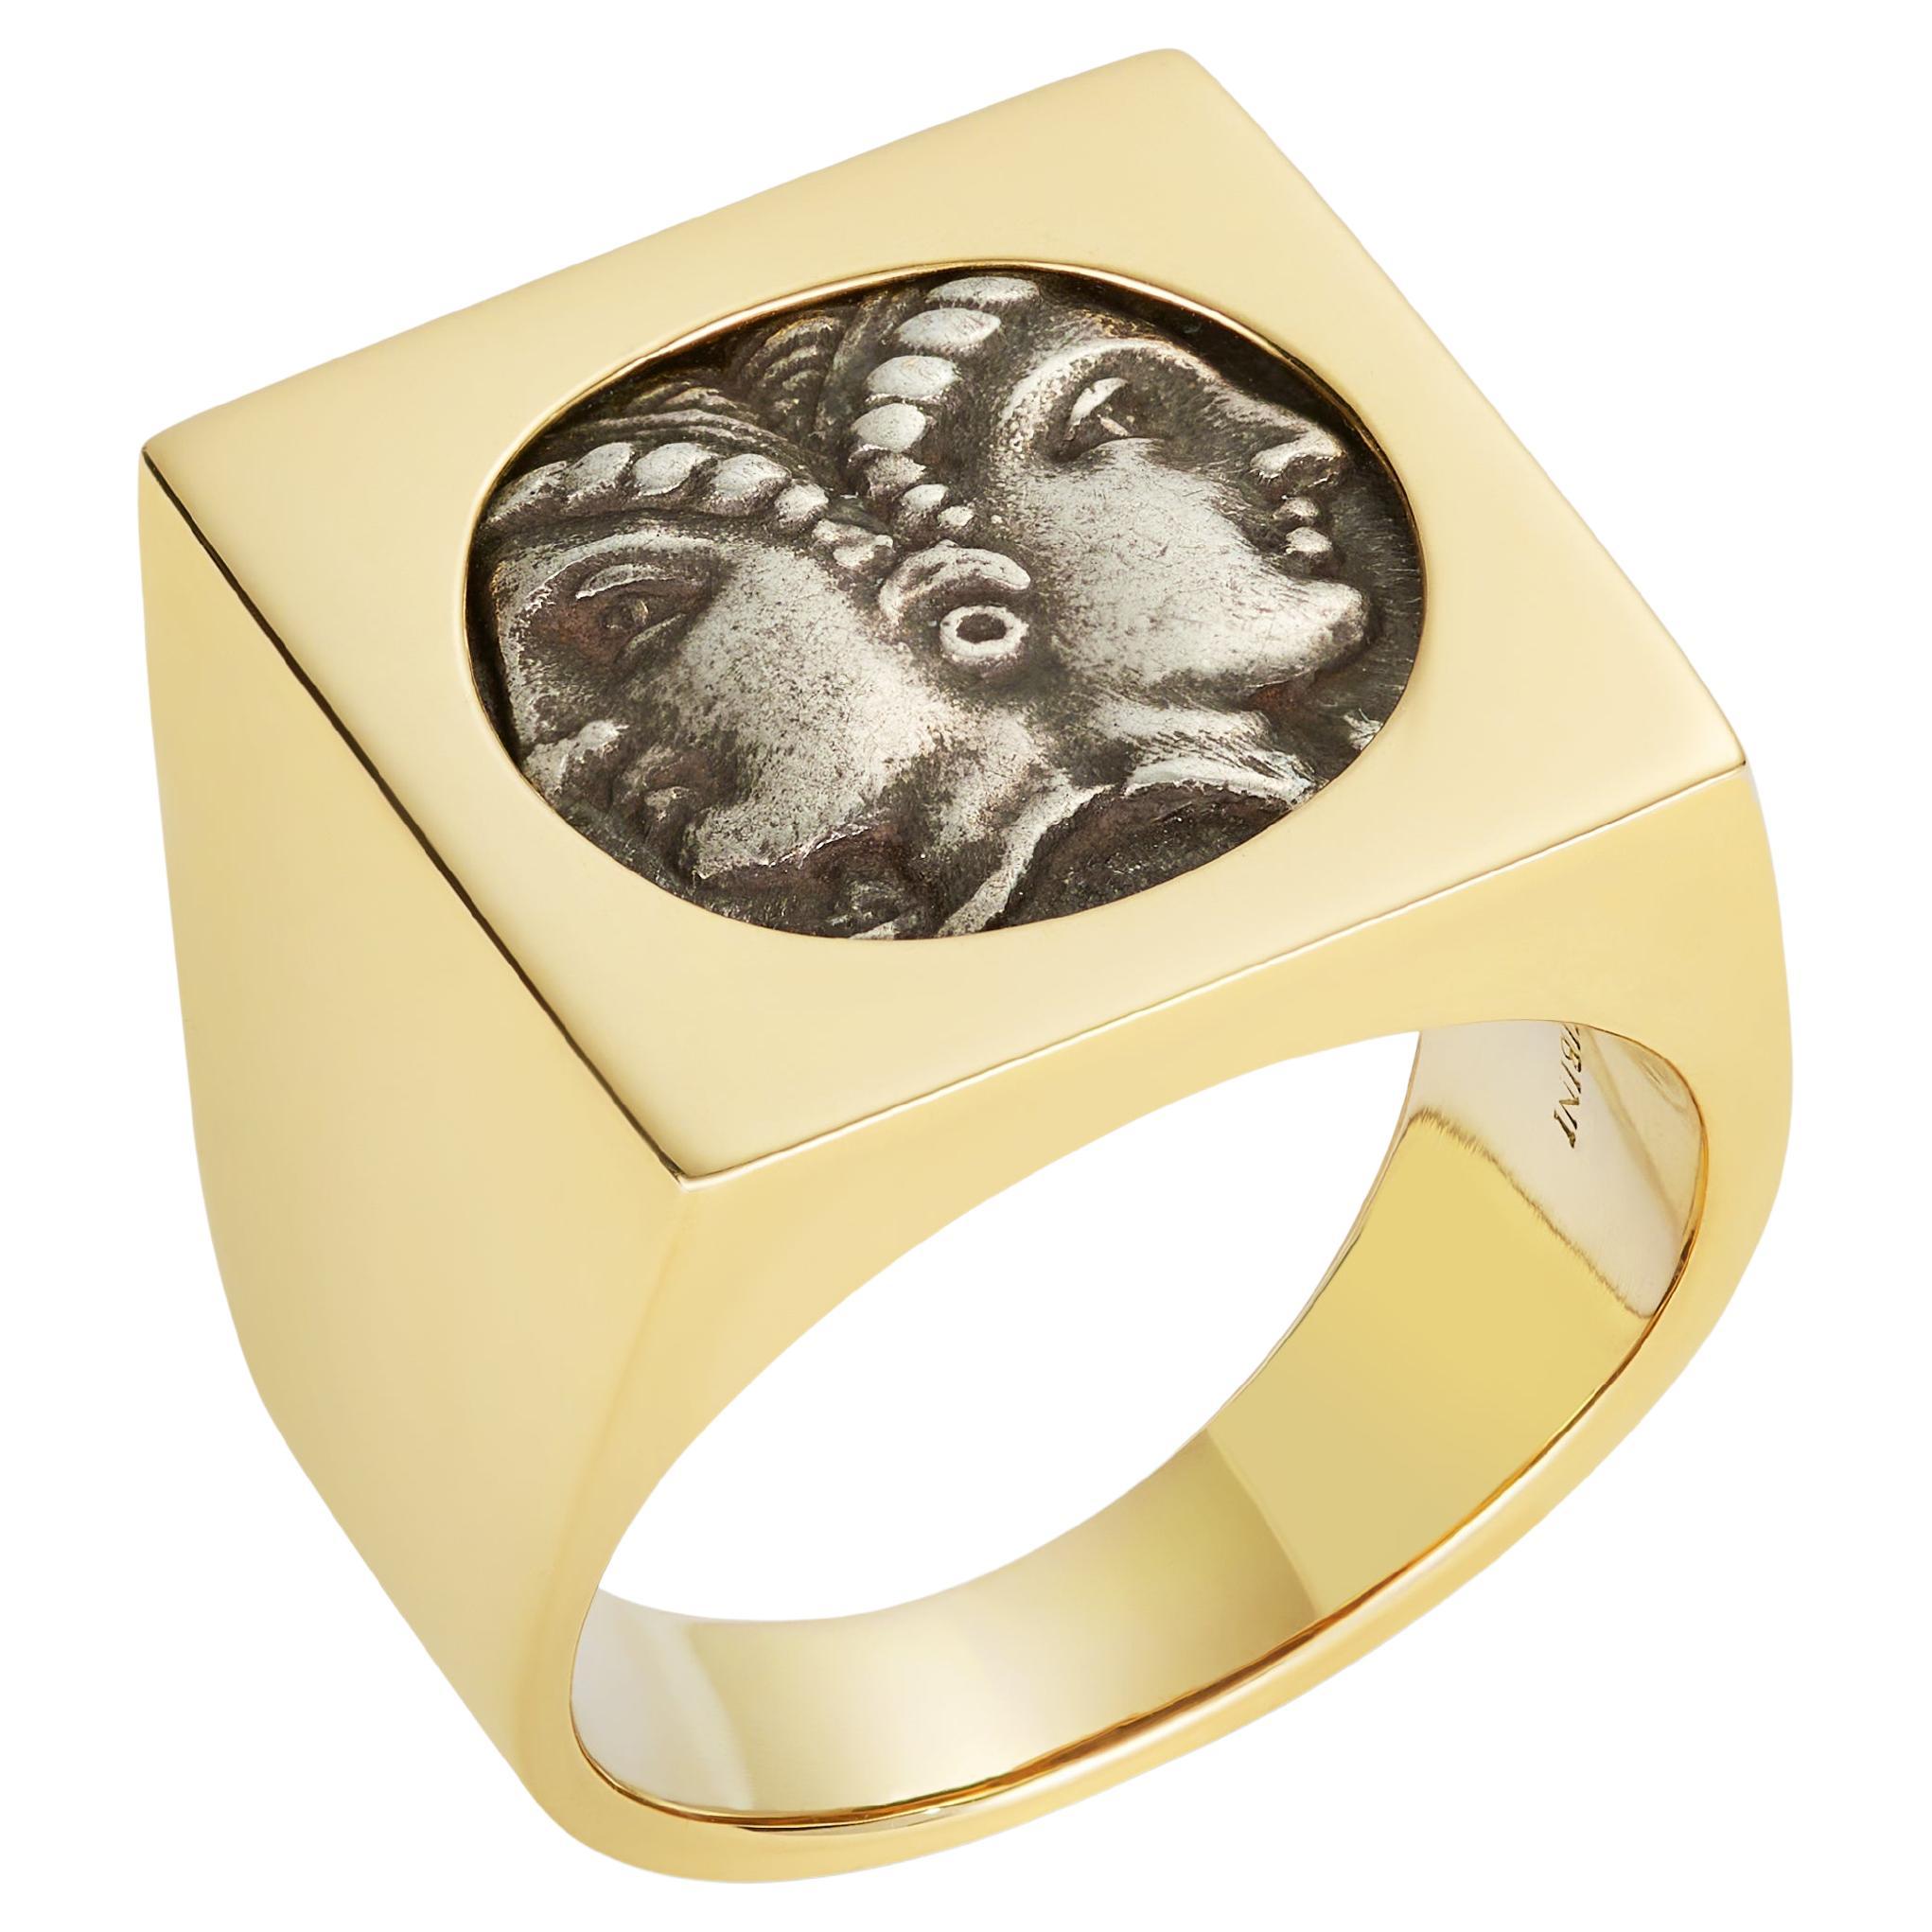 Dubini, bague sigillaire féminine Janiform en or jaune 18 carats avec ancienne pièce de monnaie en argent